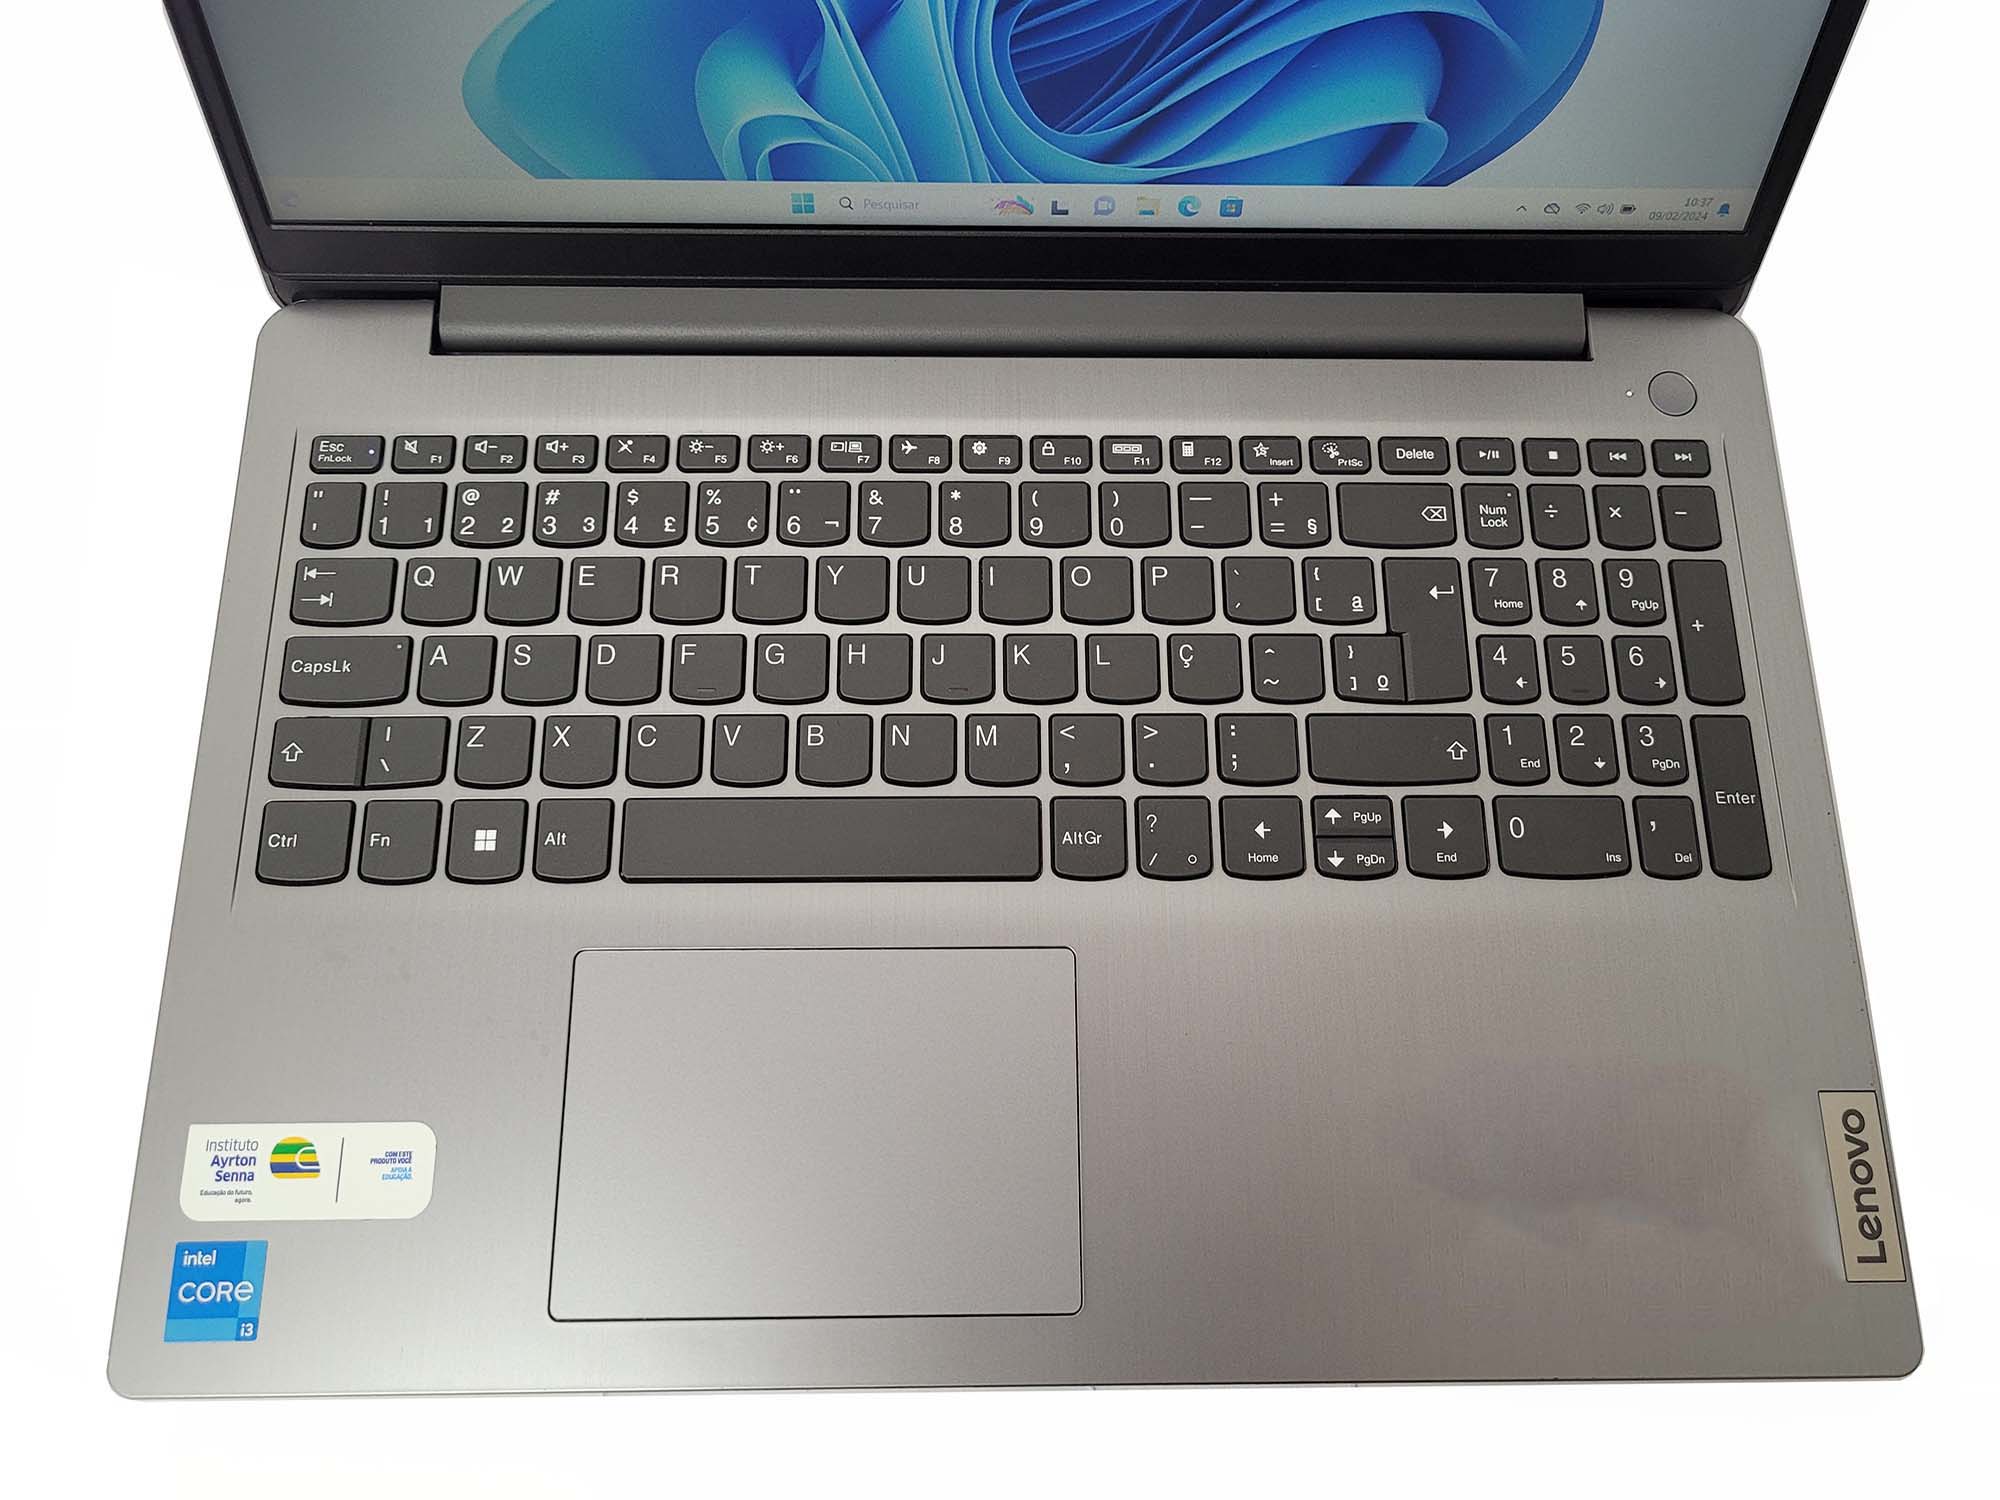 Notebook Lenovo IdeaPad 3i, Tela 15.6